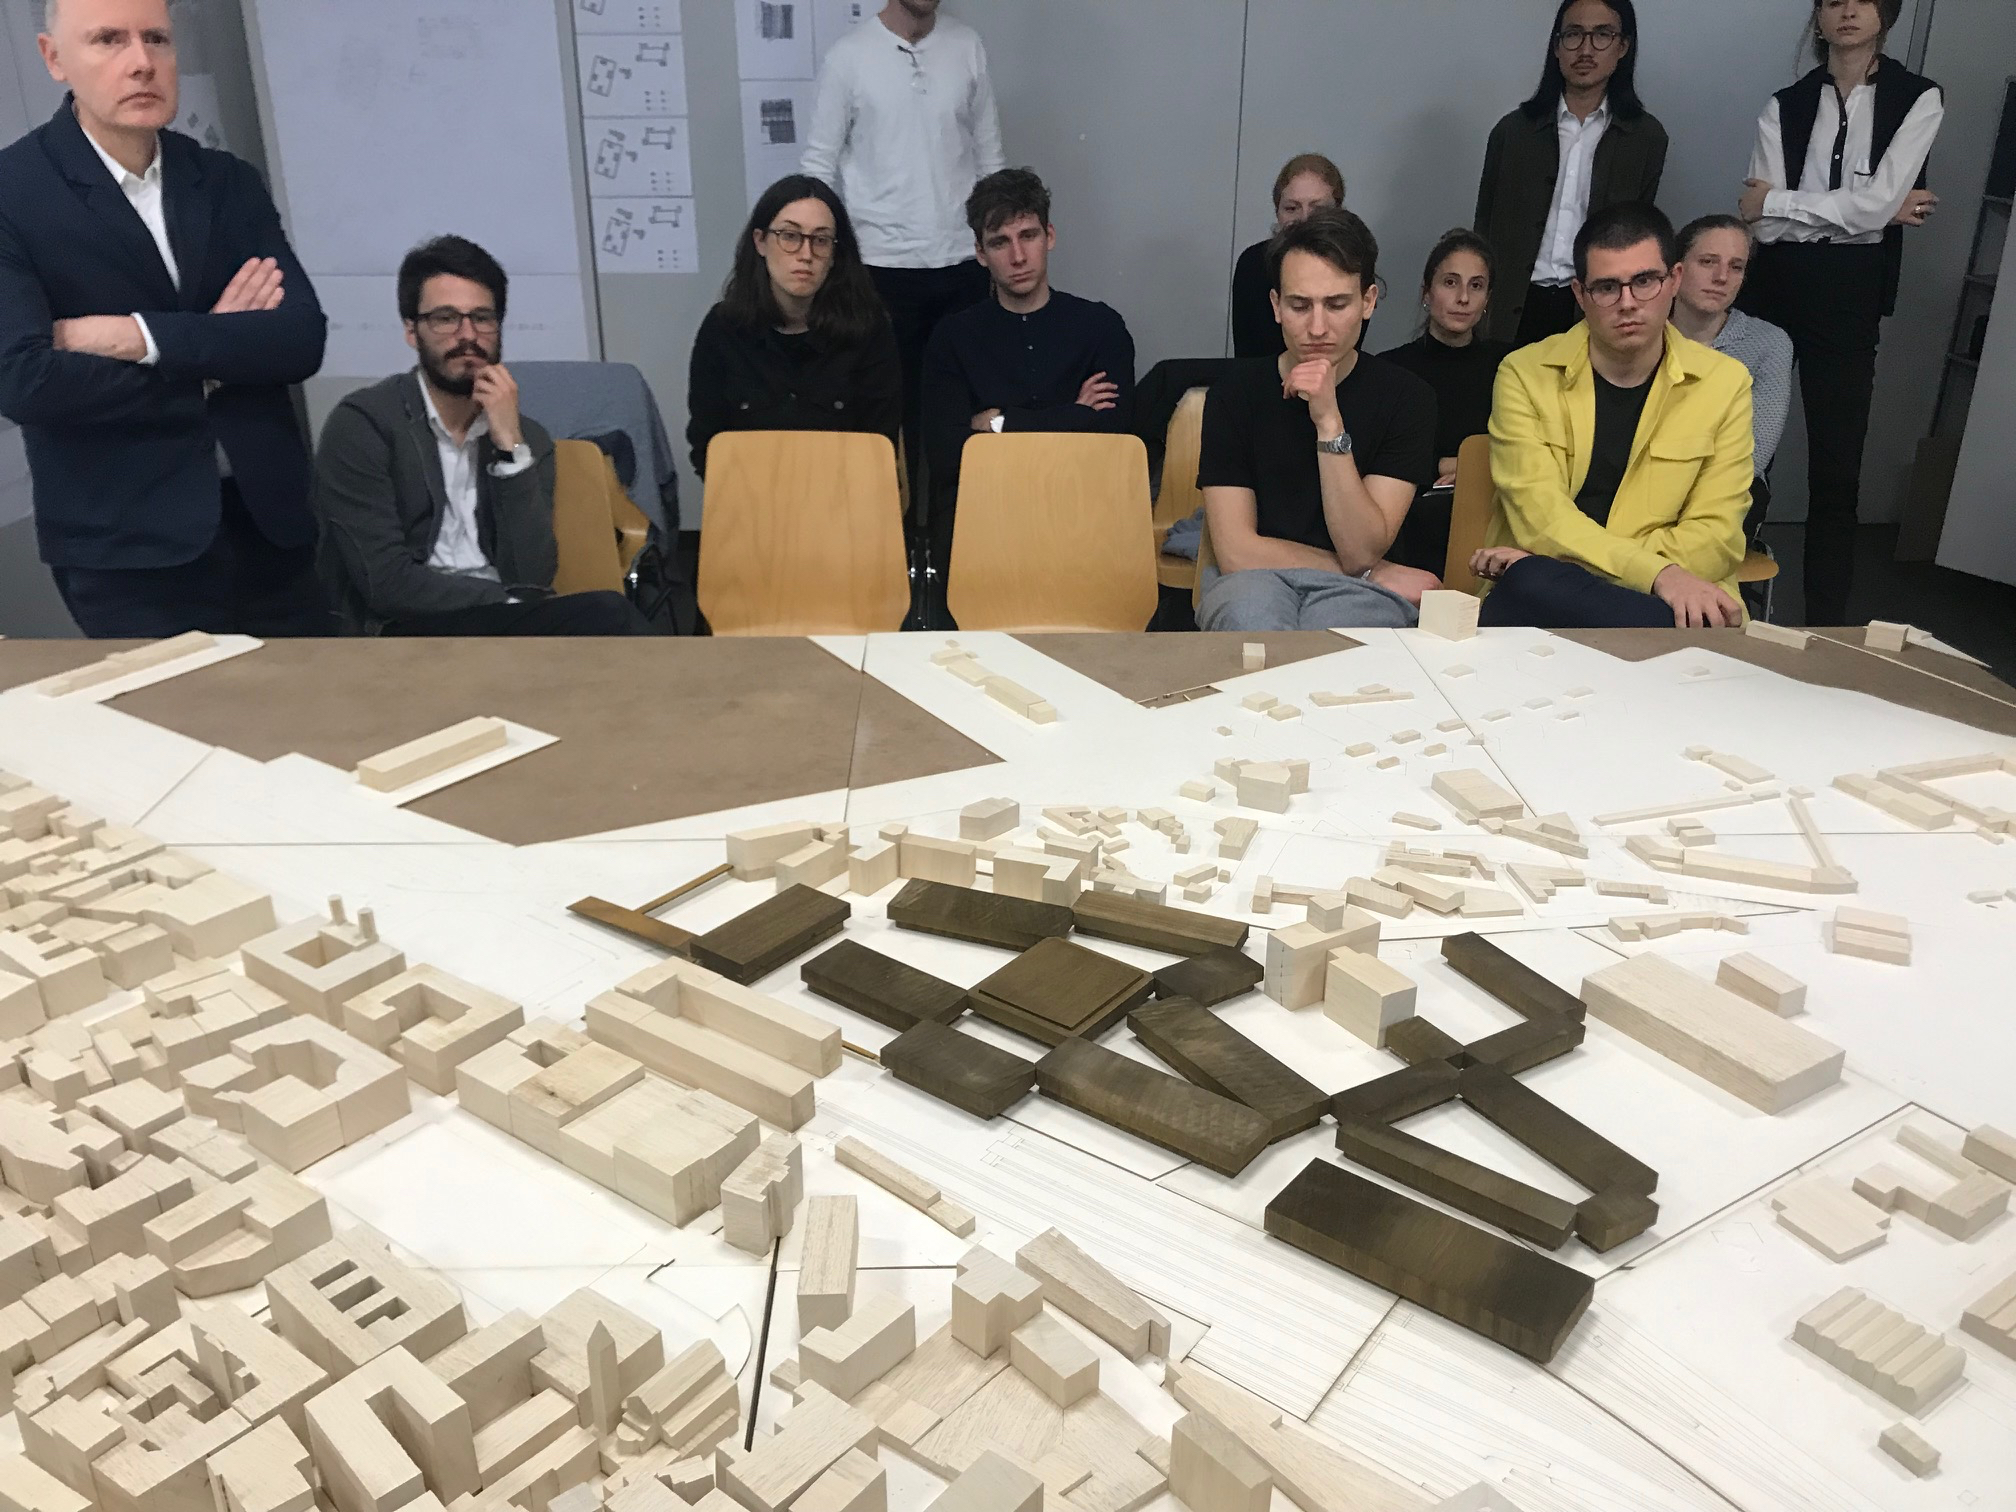 Intermediate Diploma Critique, Cagliari Continuità, Studio Jonathan Sergision, Accademia di architettura, Mendrisio (Switzerland), April 3, 2019.